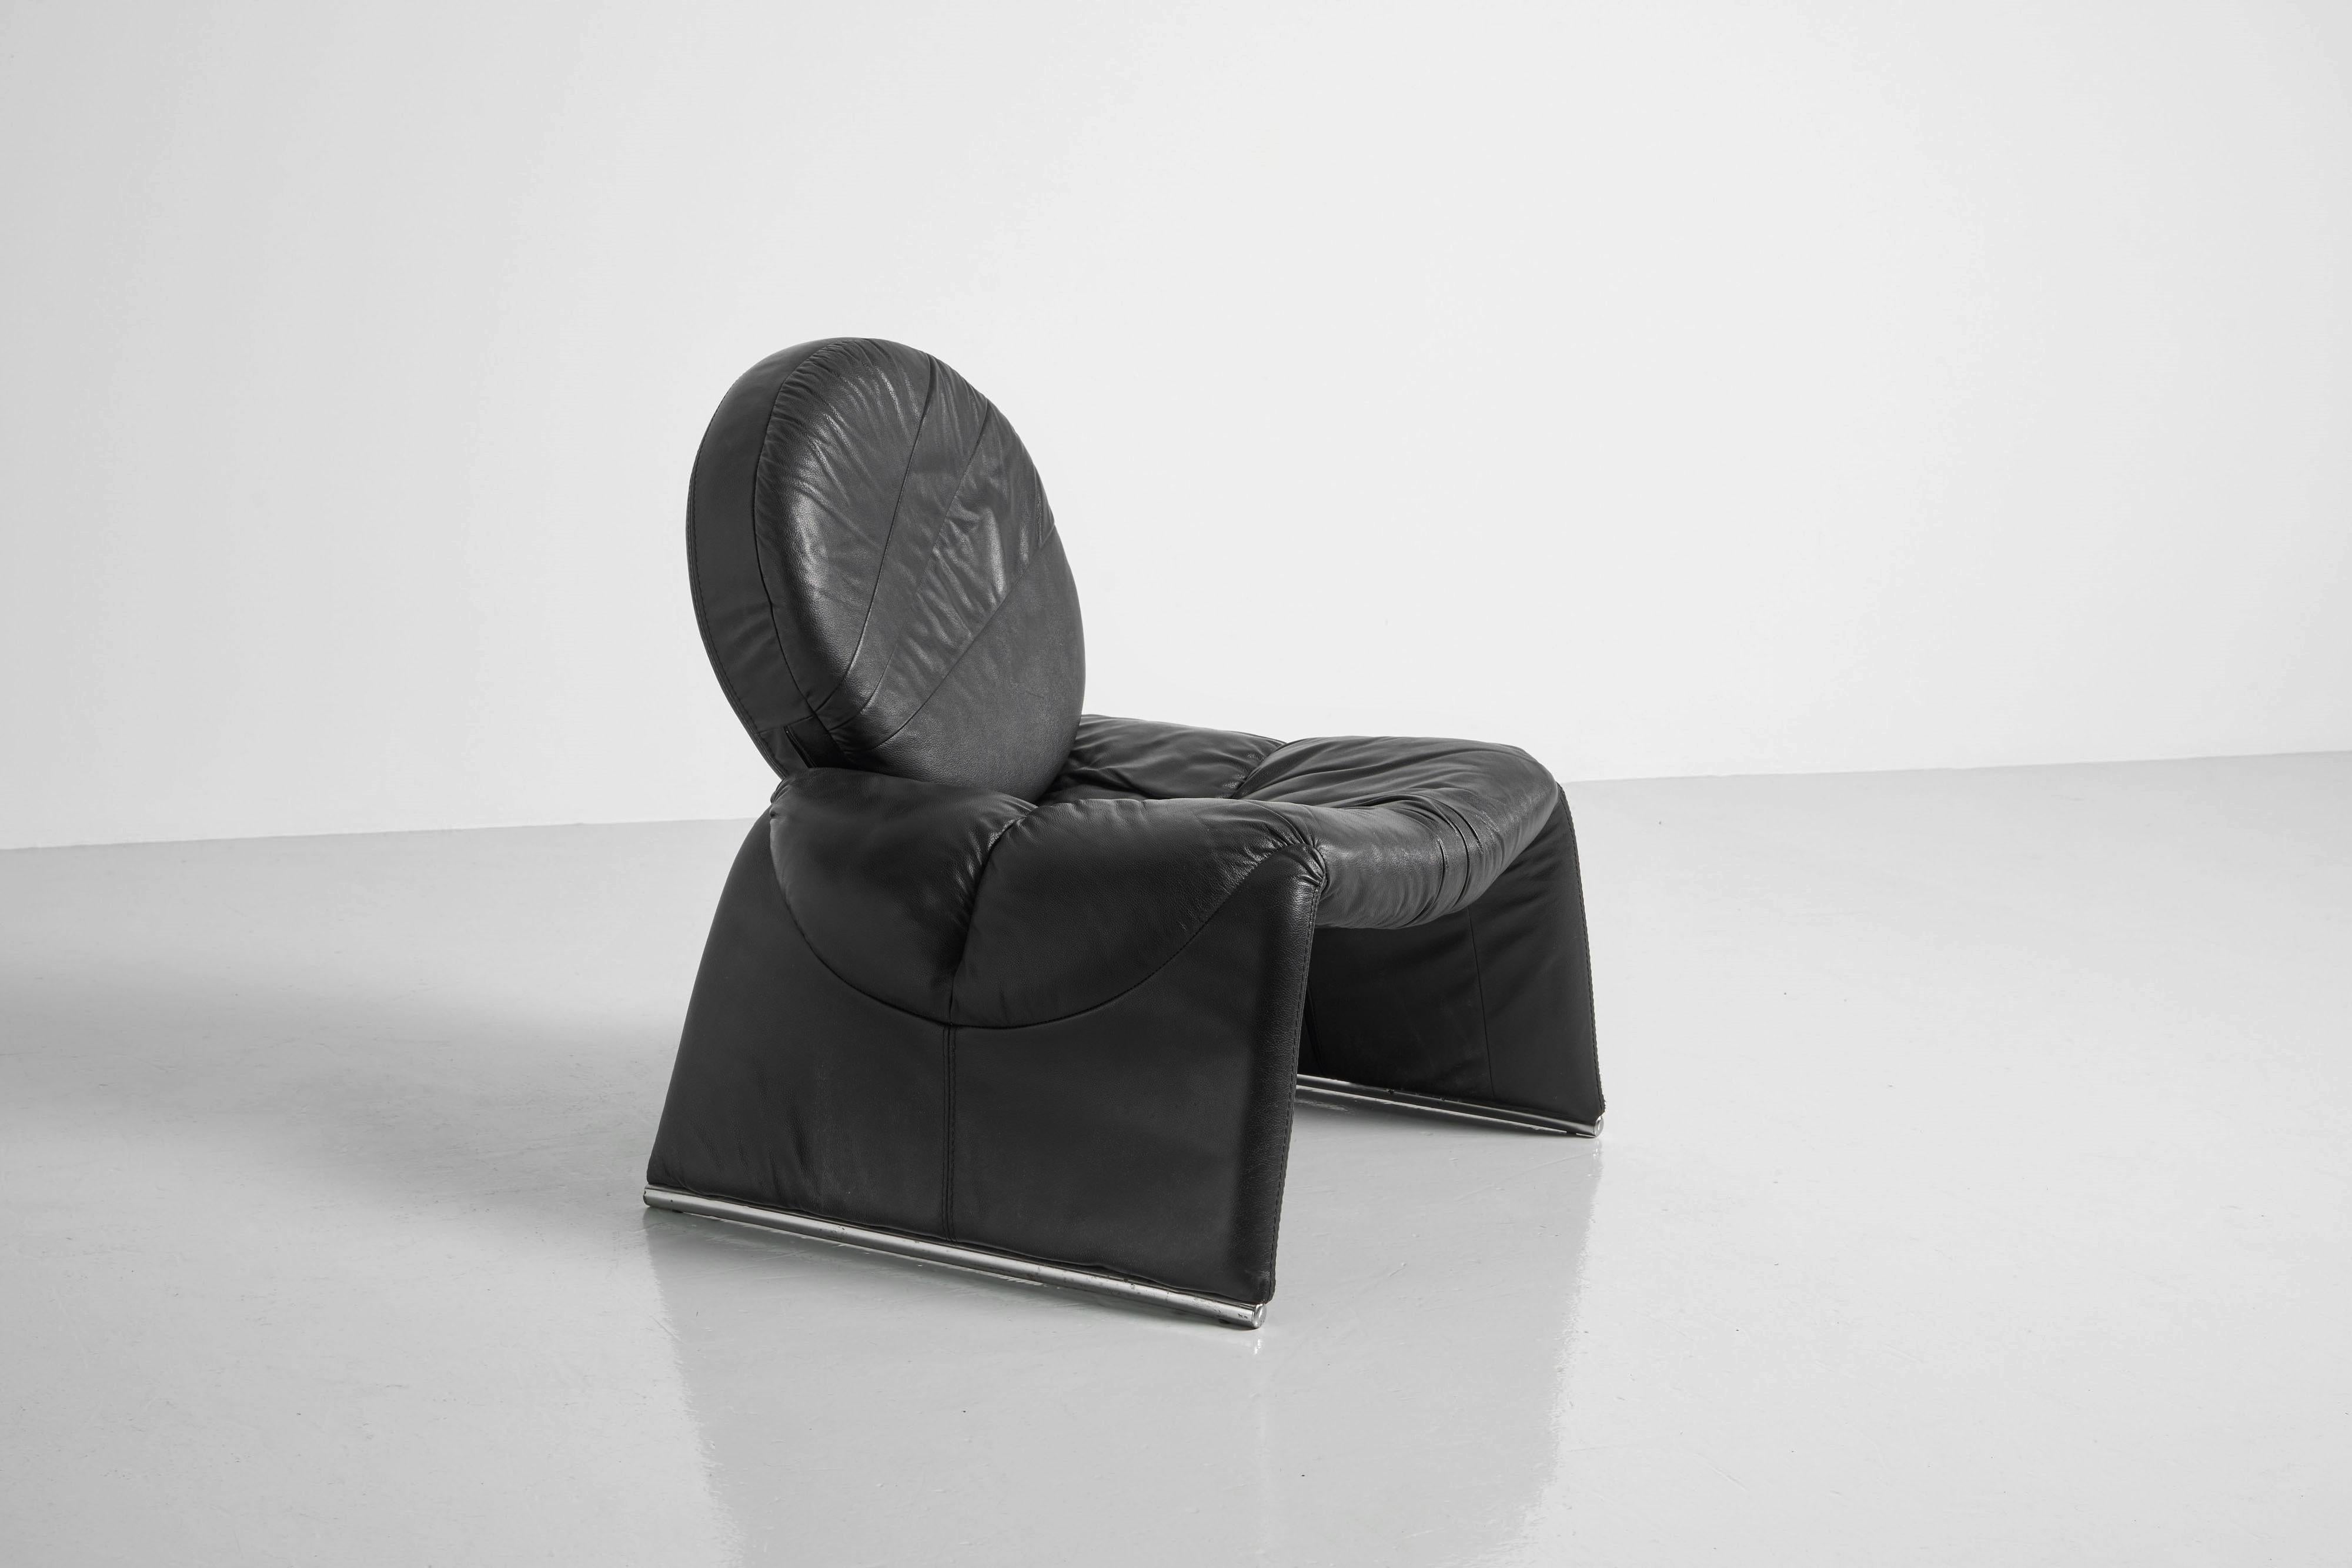 Fantastique chaise longue originale Vittorio Introini Calypso, un chef-d'œuvre intemporel conçu en 1979 et fabriqué par Saporiti en Italie. Le fauteuil est doté d'une assise en cuir en forme de cascade et d'un dossier rond en cuir. L'assise est